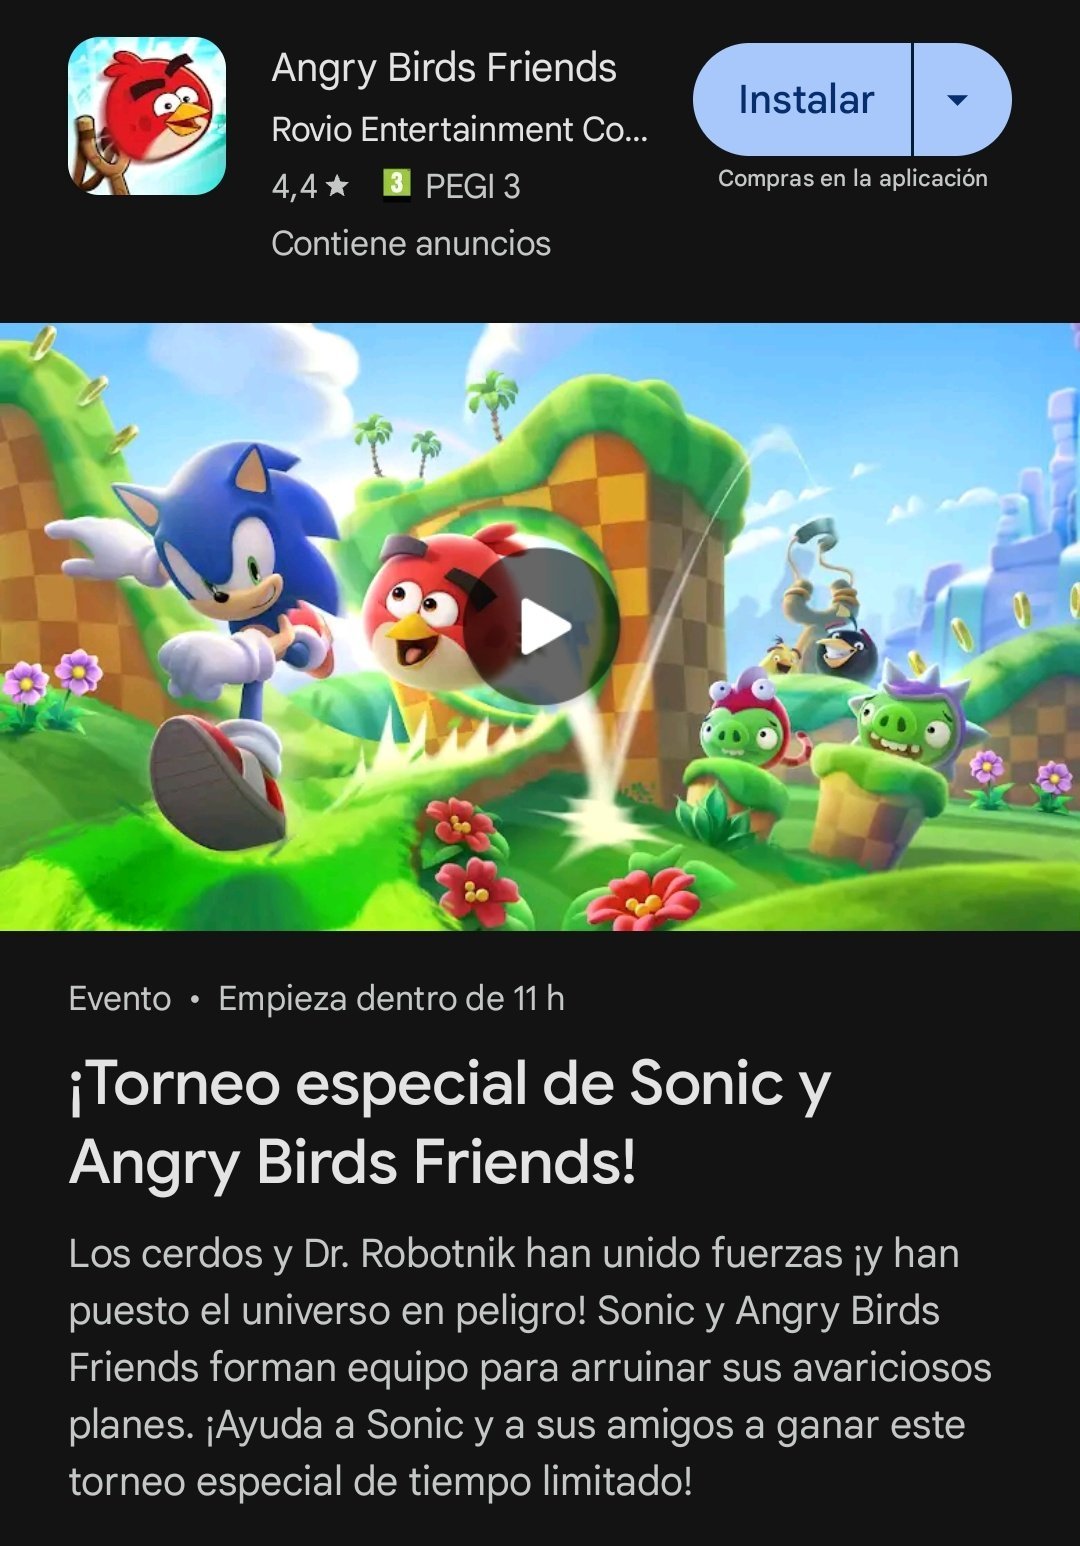 Sonic The Hedgehog x Angry Birds anuncian colaboración,¿Nuevo juego en camino? 3